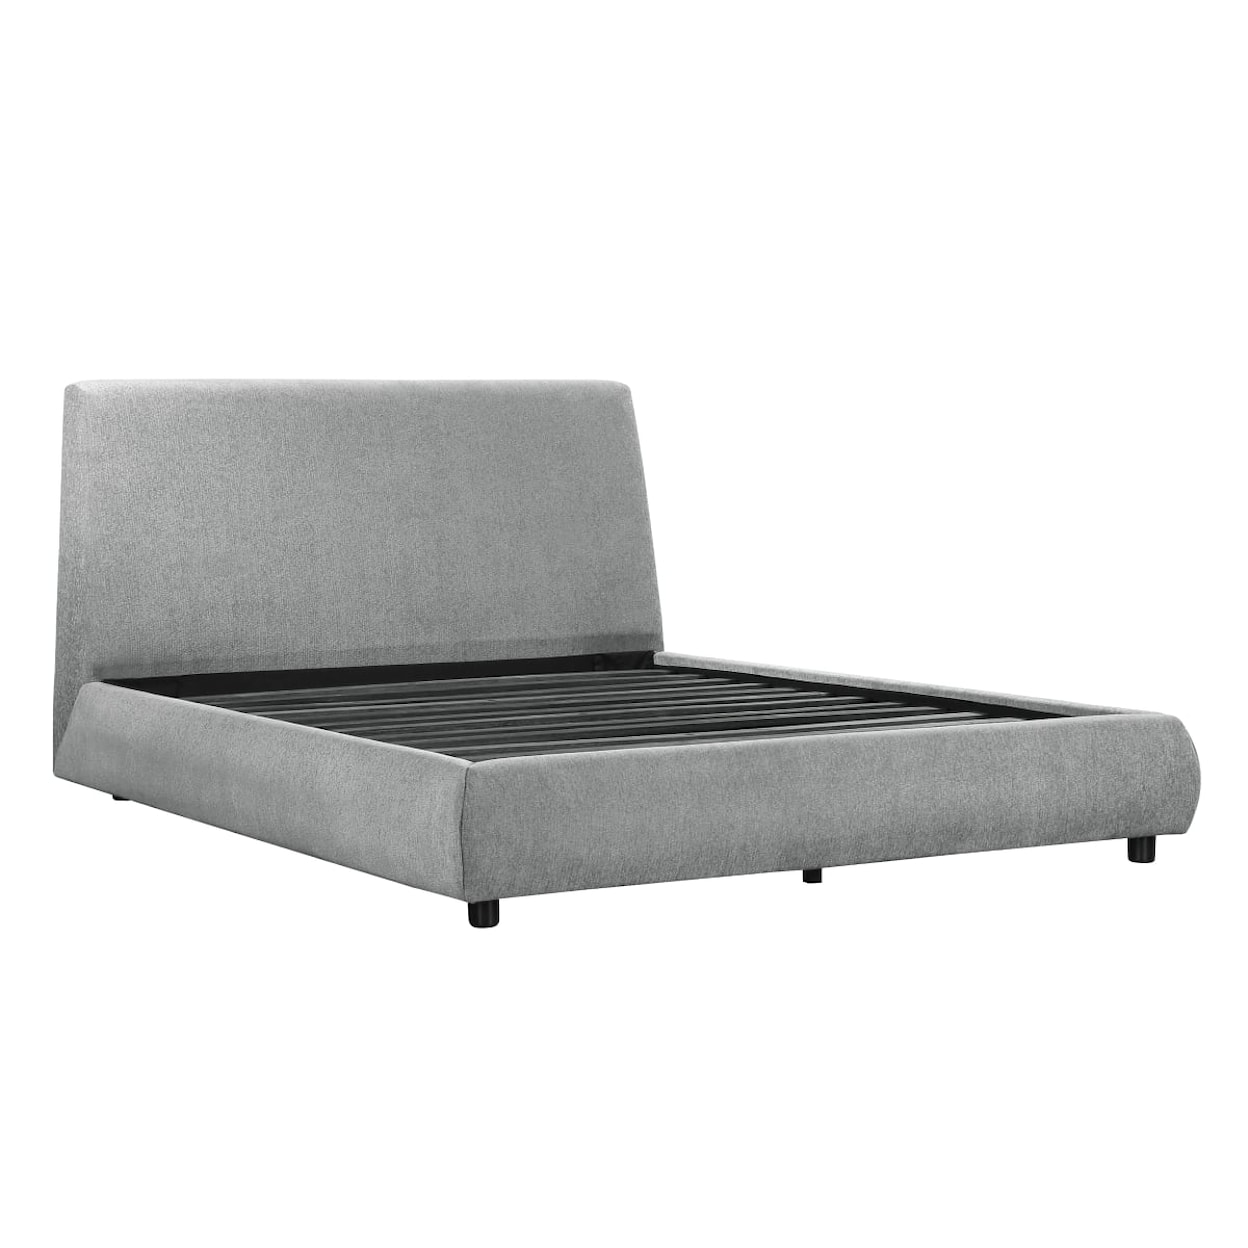 Homelegance Furniture Alford California King Platform Bed